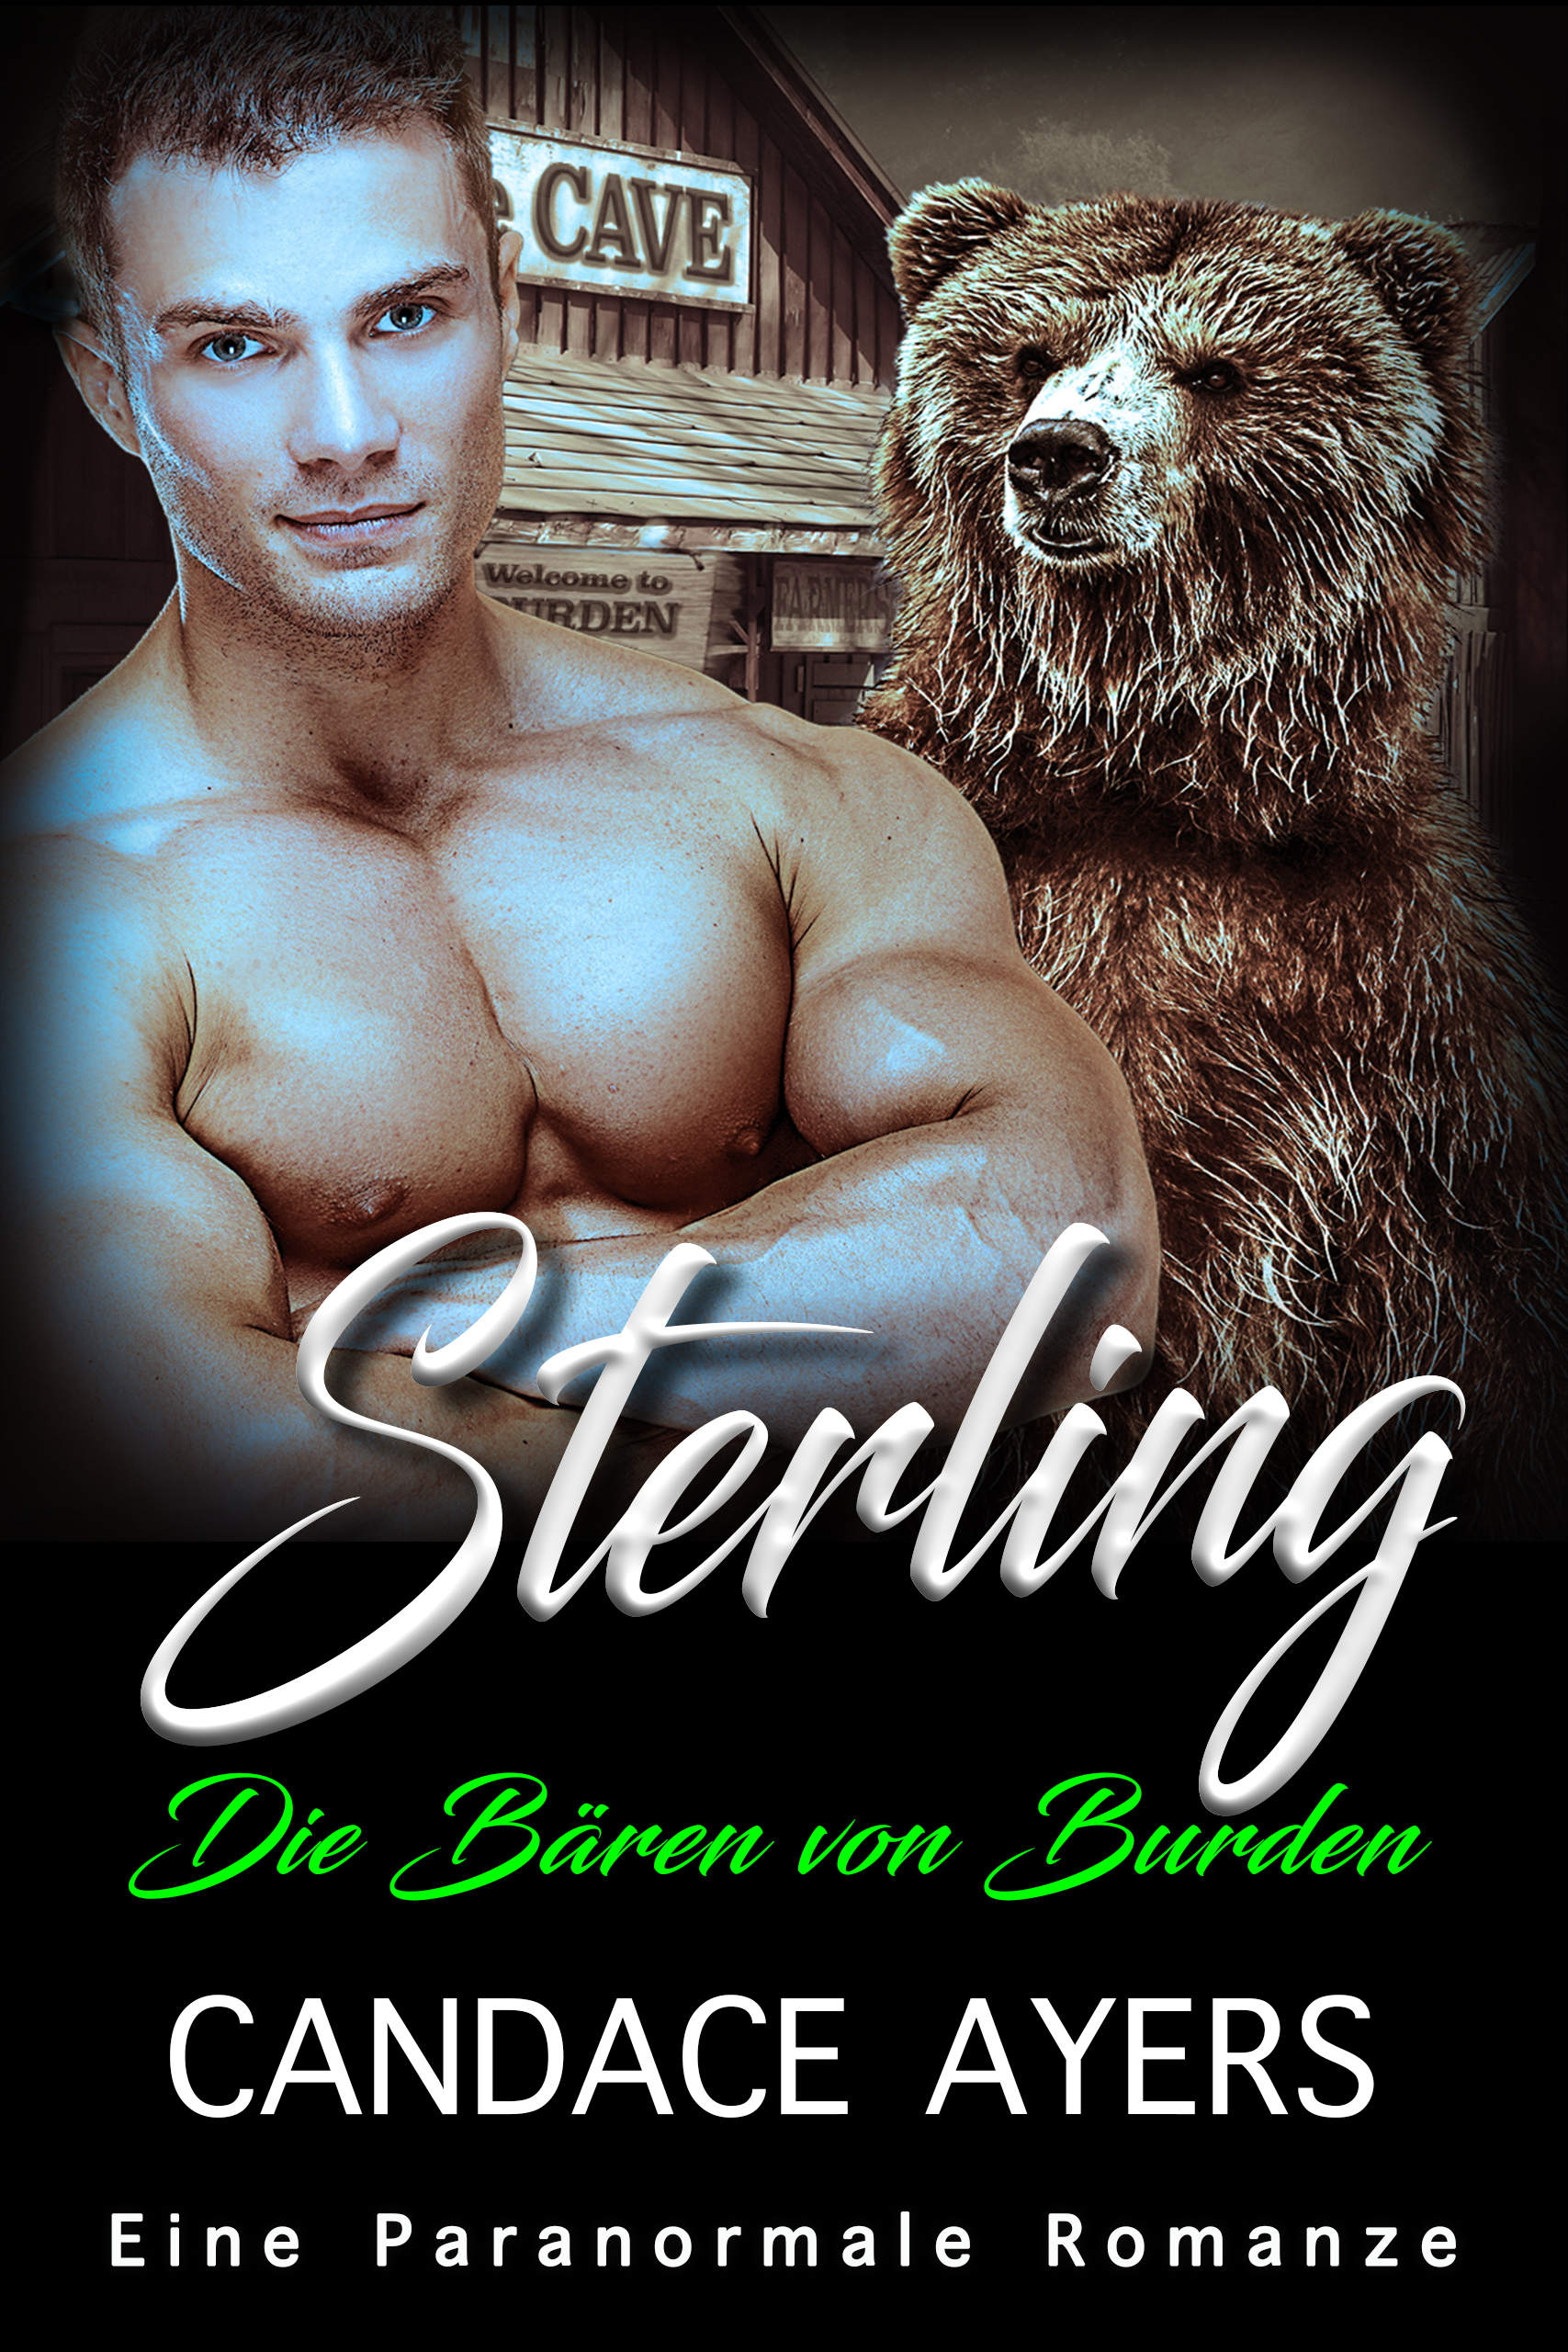 Sterling: Eine Paranormale Romanze (Die Bären von Burden 4)